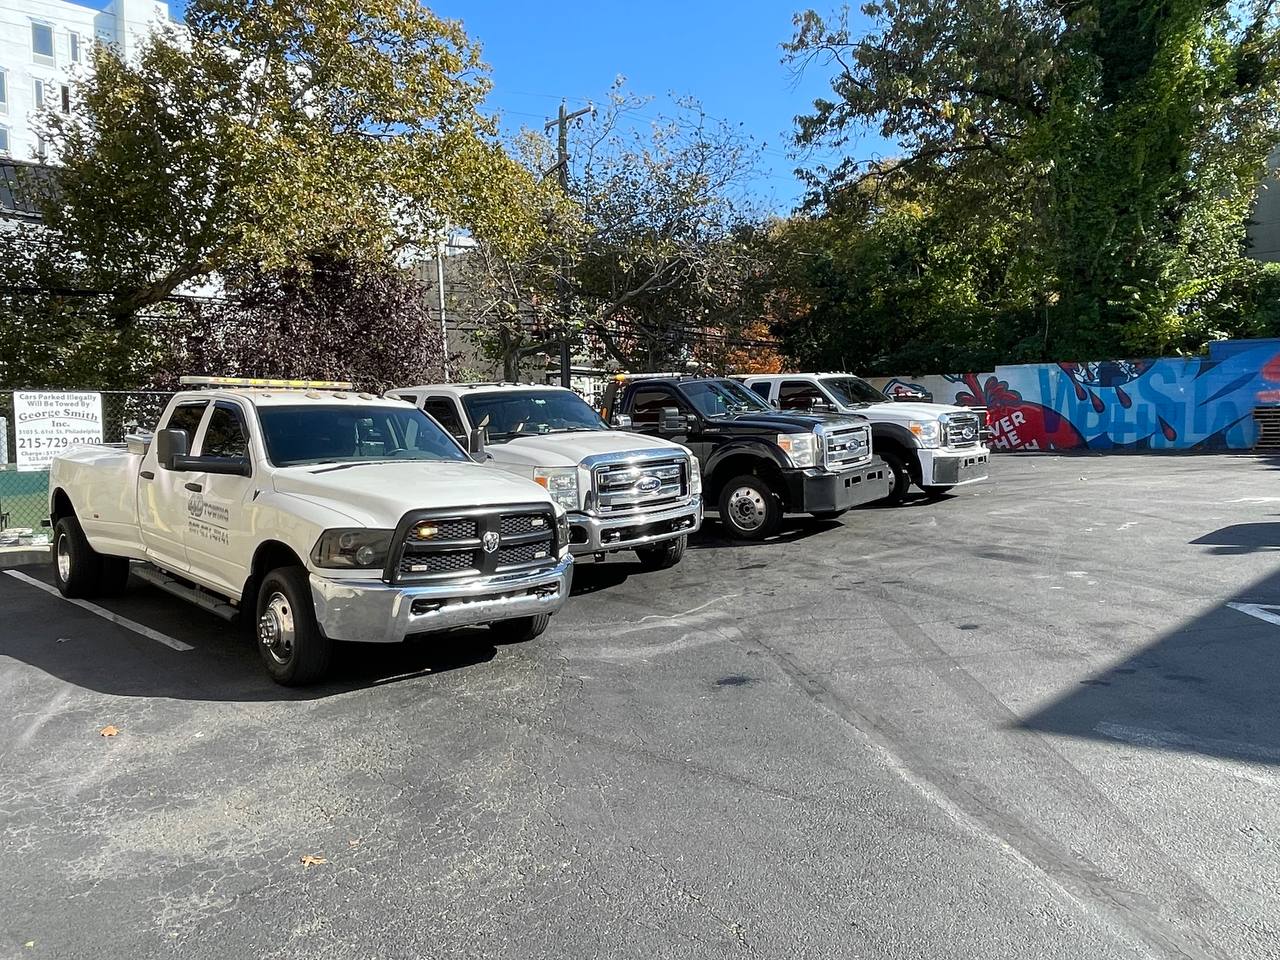 Trucks on parking